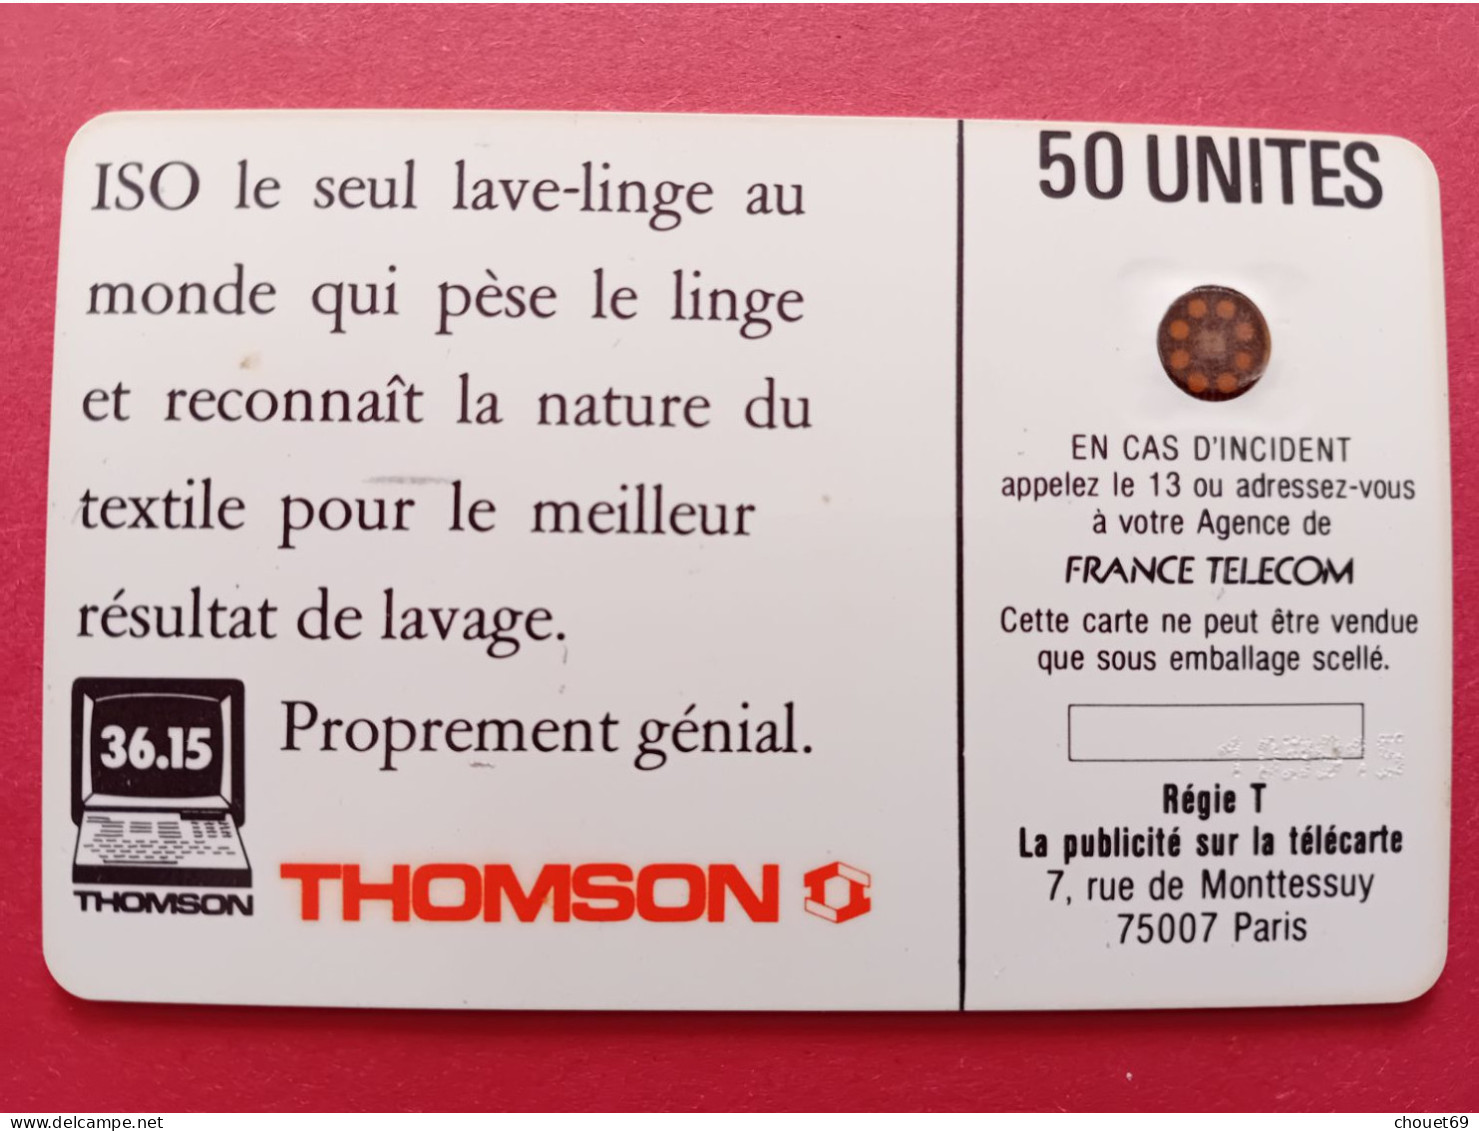 ISO THOMSON Décalage Verso Vers Le Haut Et N° De Lot Décalé à Droite Impact 103915 Variété (A90623 - 1989